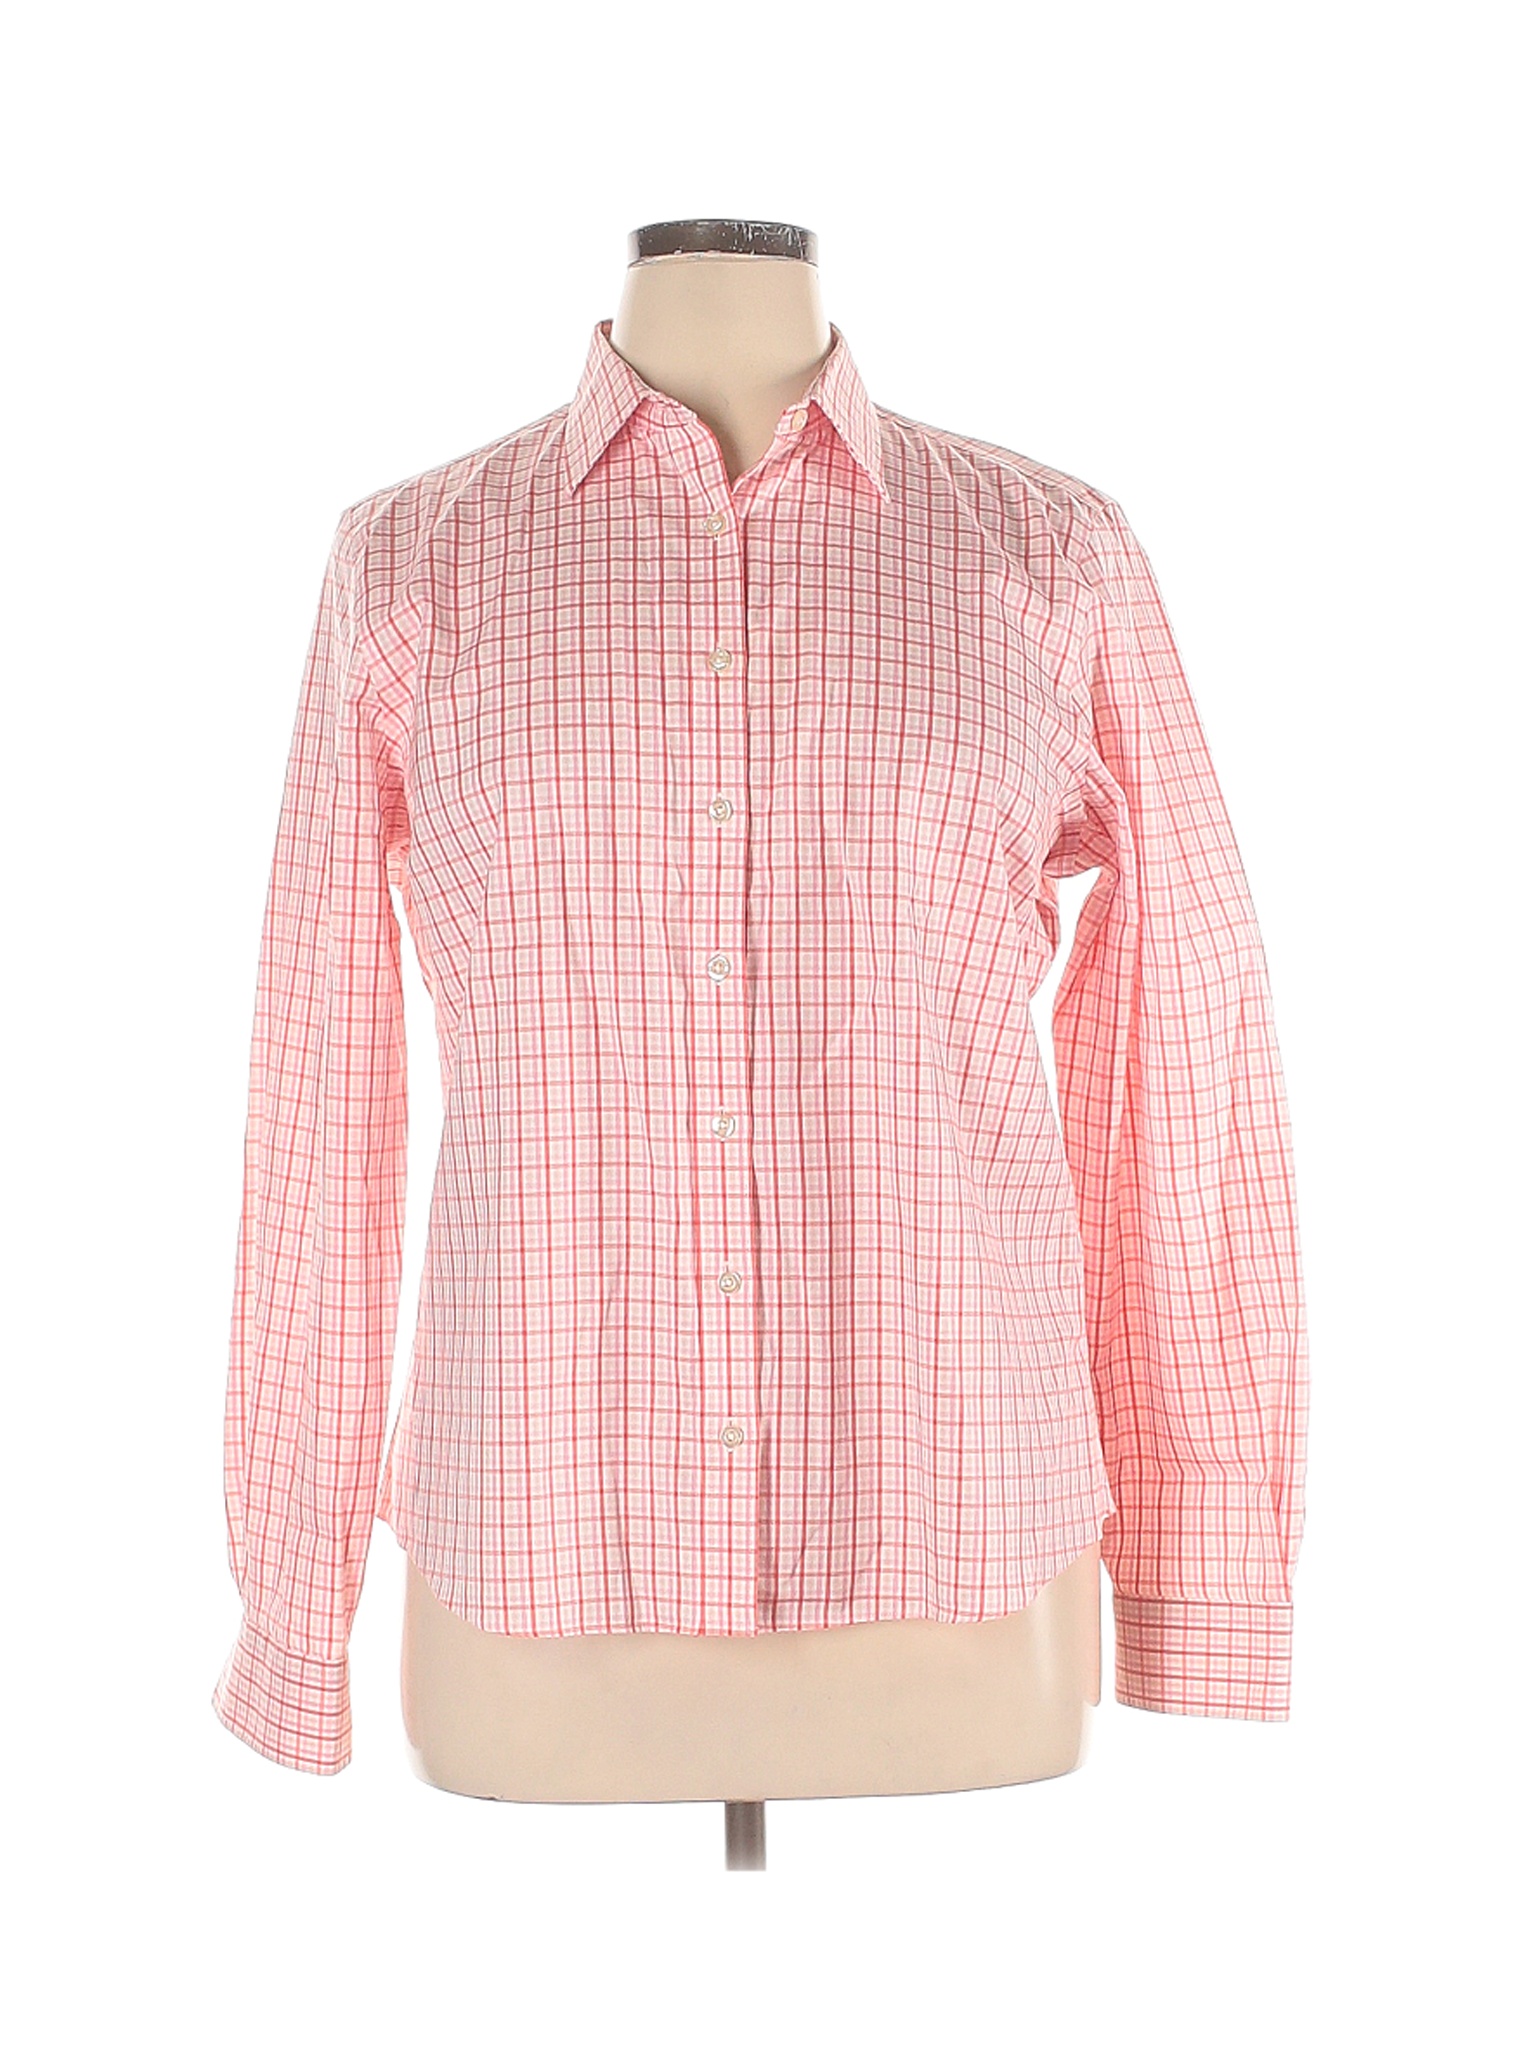 Lands' End Women Pink Long Sleeve Button-Down Shirt 16 | eBay